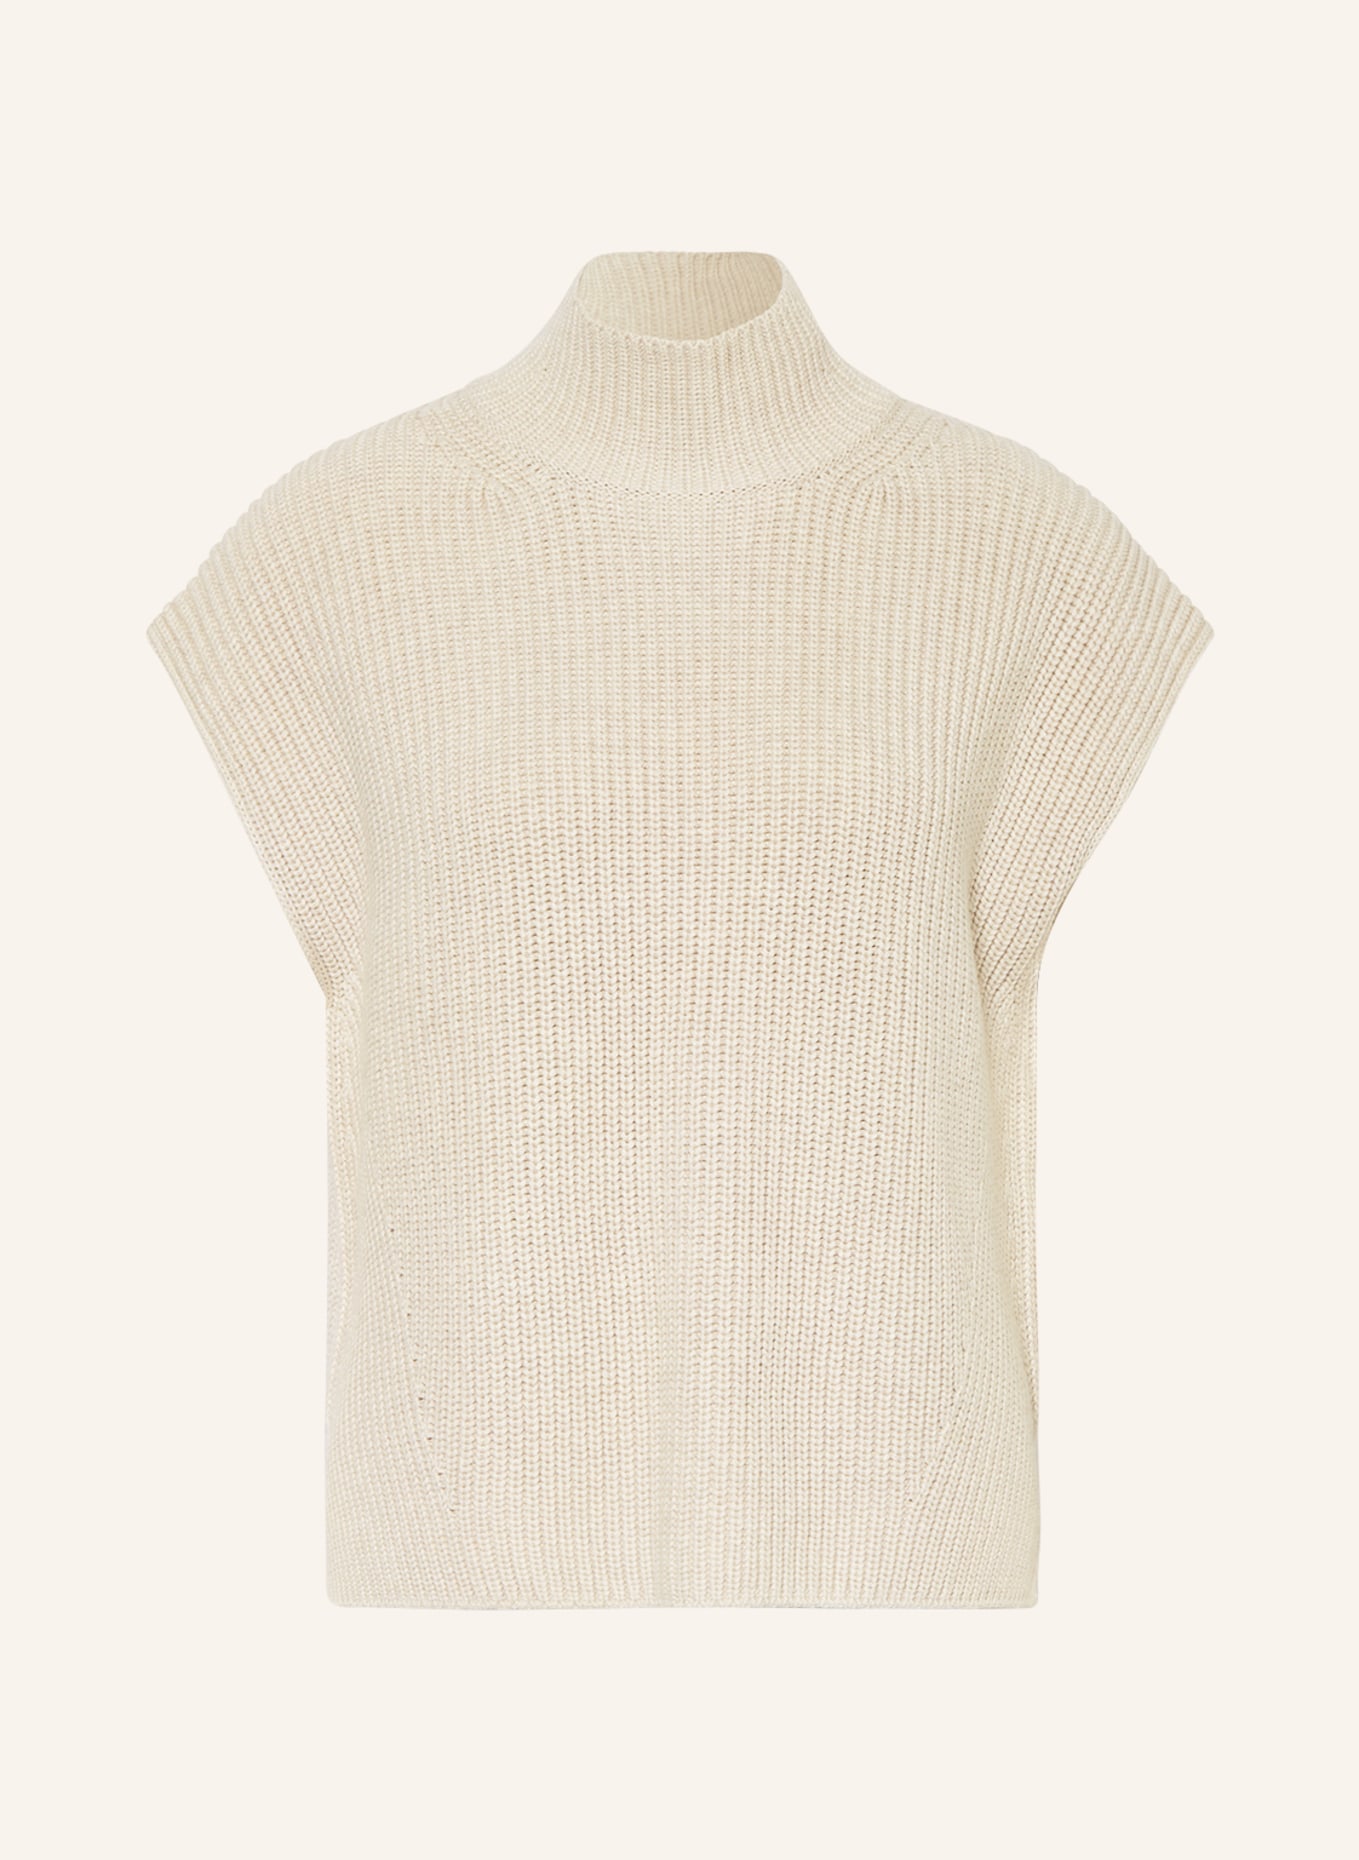 Marc O'Polo Sweater vest, Color: CREAM (Image 1)